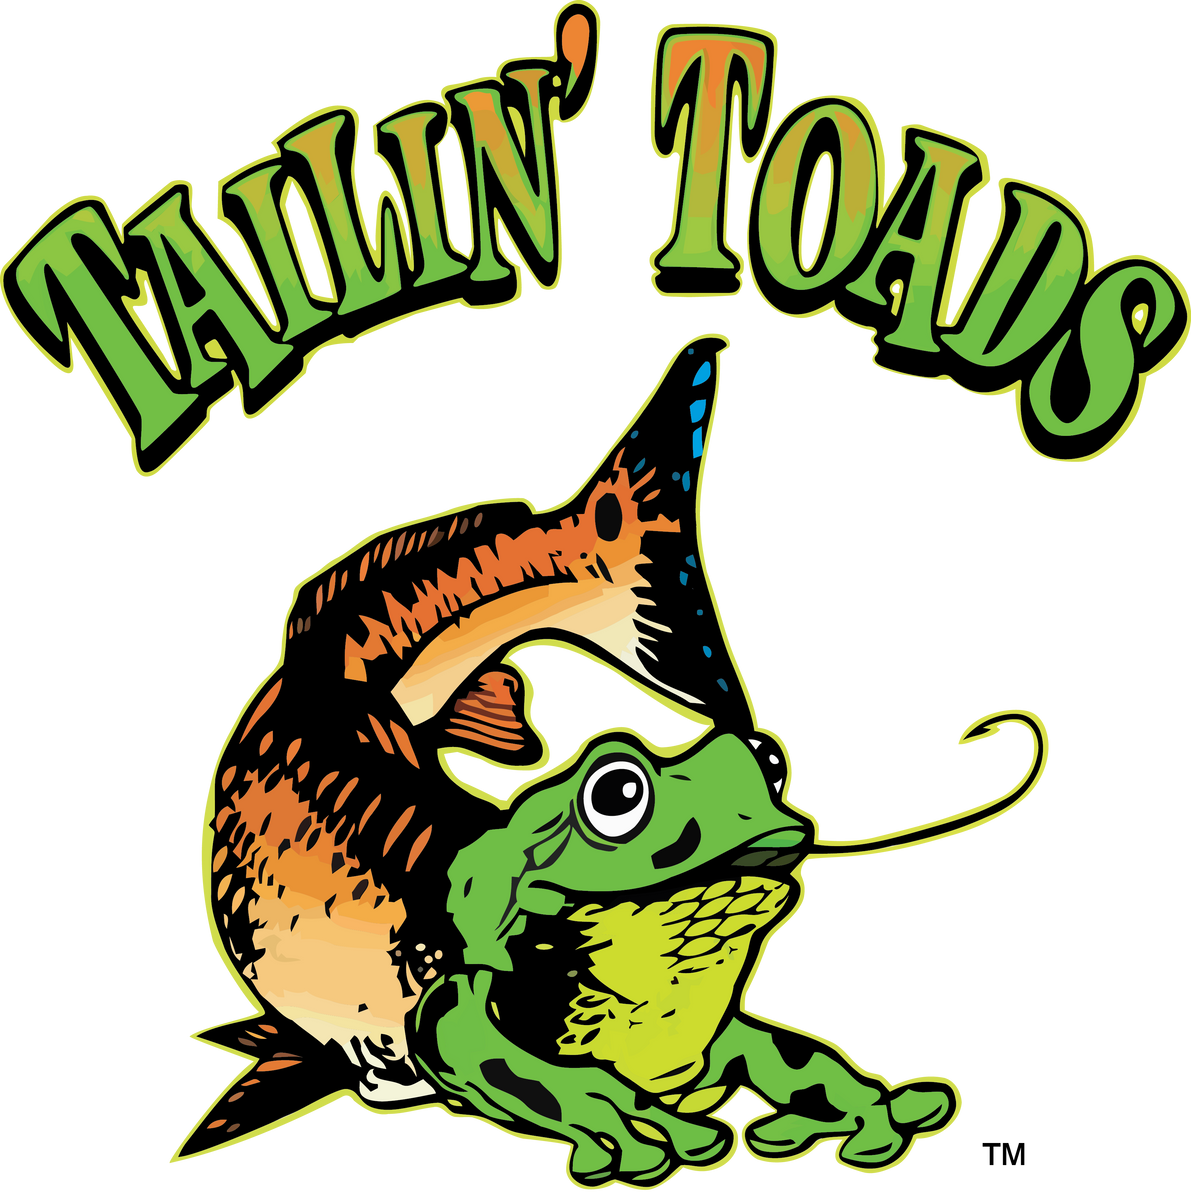 Tailin Toads – TAILIN' TOADS APPAREL